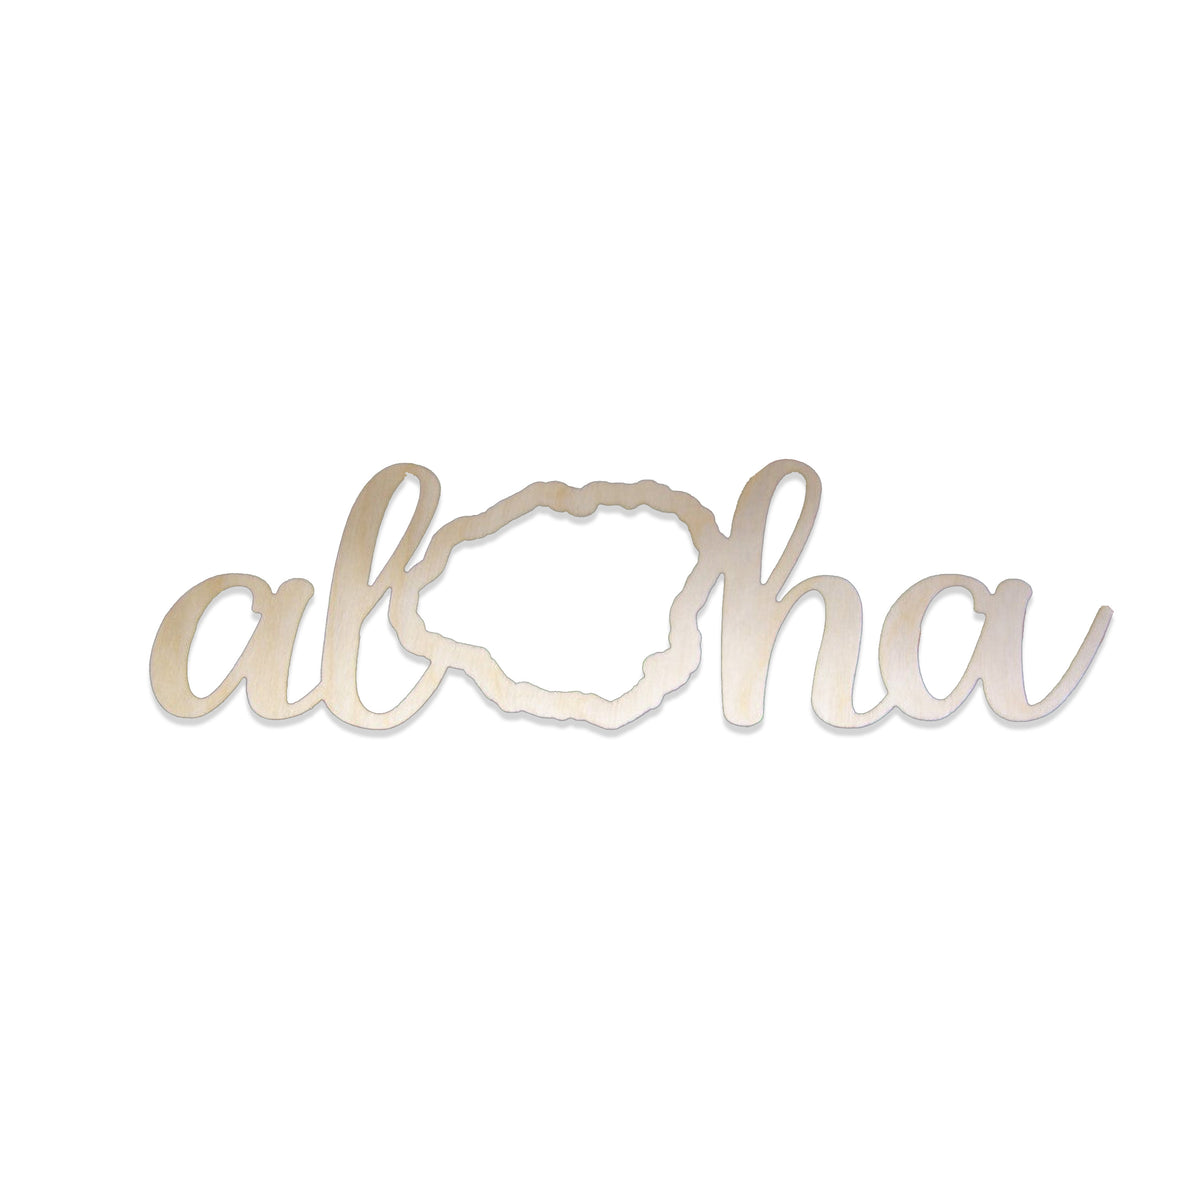 Pop-Up Mākeke - Aloha Overstock - Laser Cut Aloha Kaua`i Wood Cutout